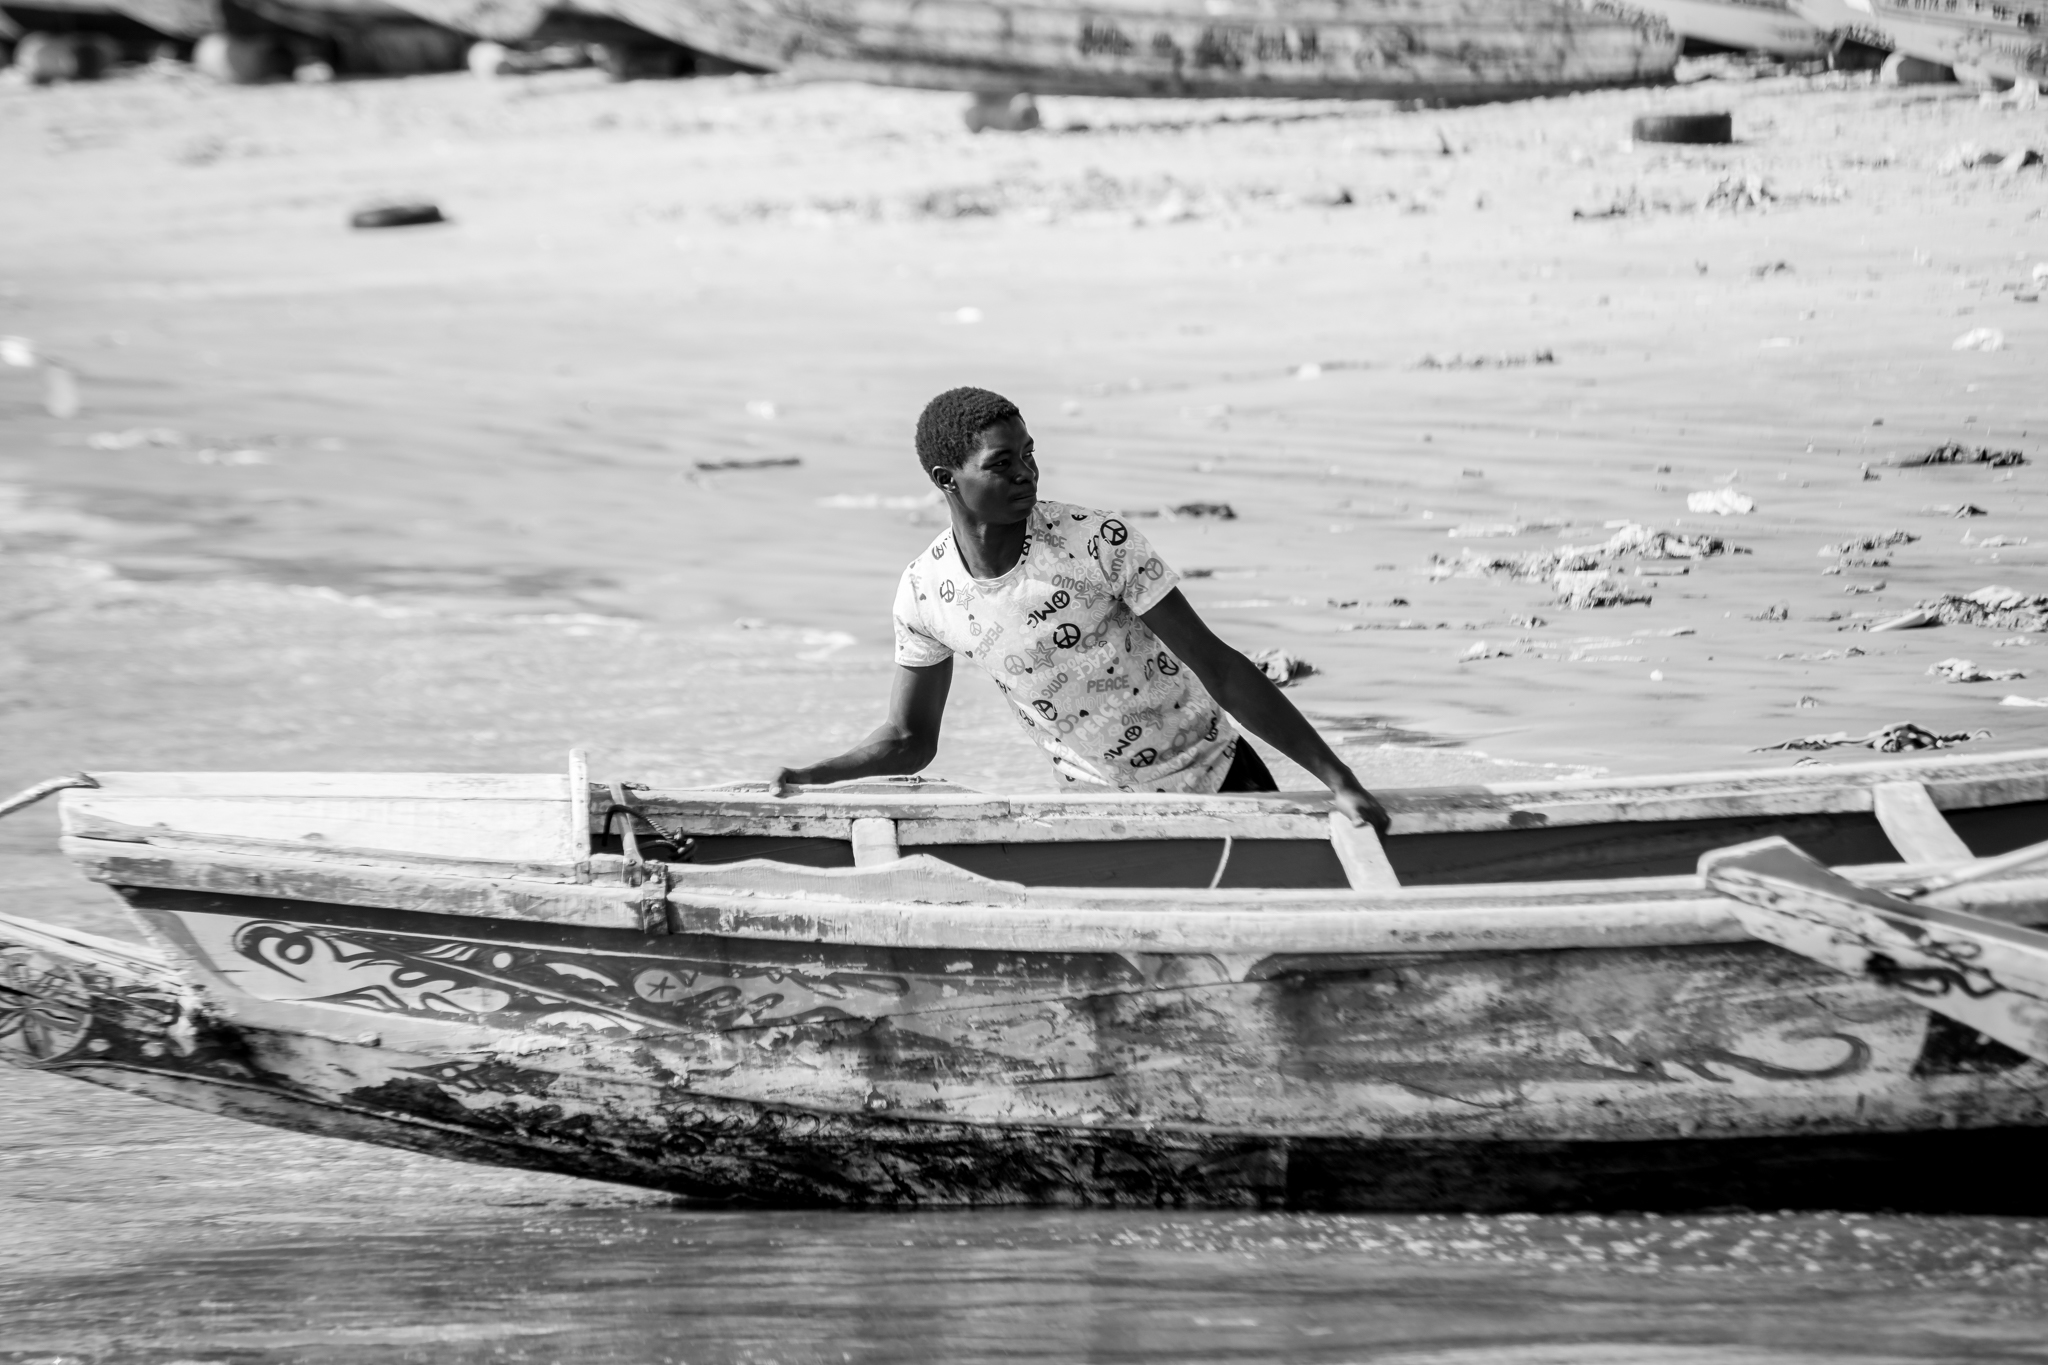 Tras a xornada de capturas fronte ás praias senegalesas os pescadores recollen con esforzo as súas barcas ou "piraguas" para pasar a noite.